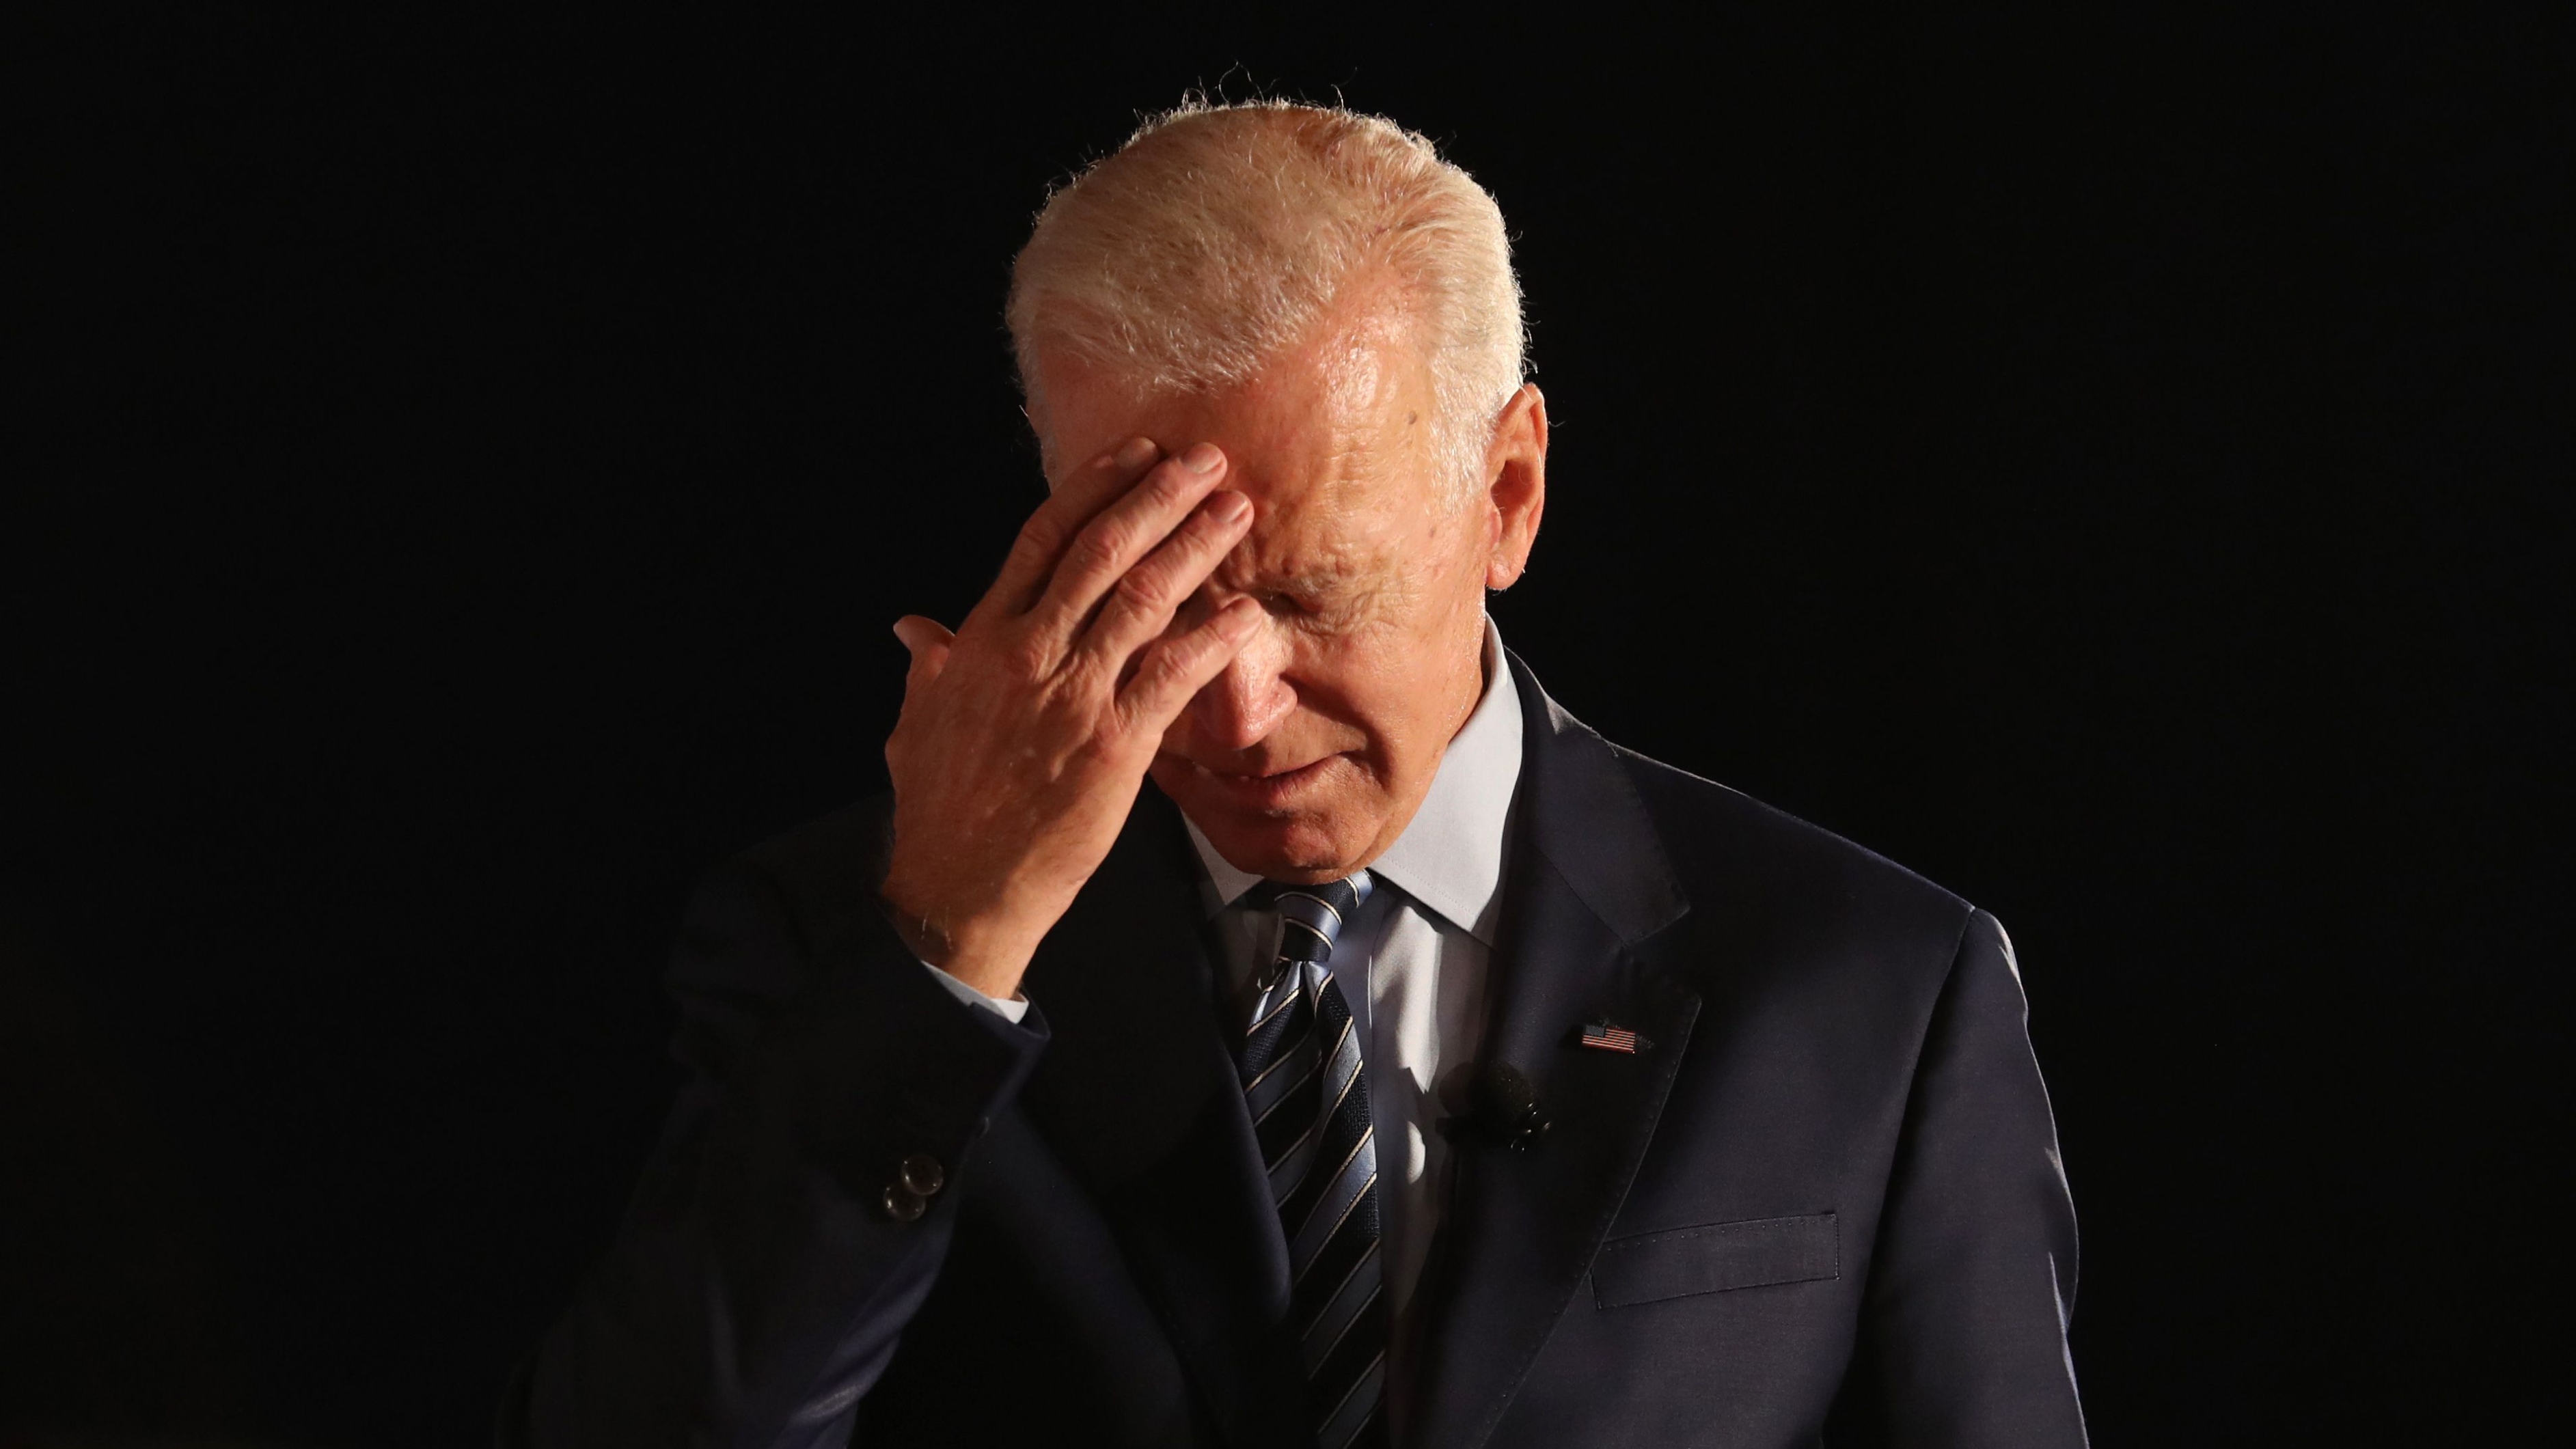 Signs do not bode well for a Biden second term